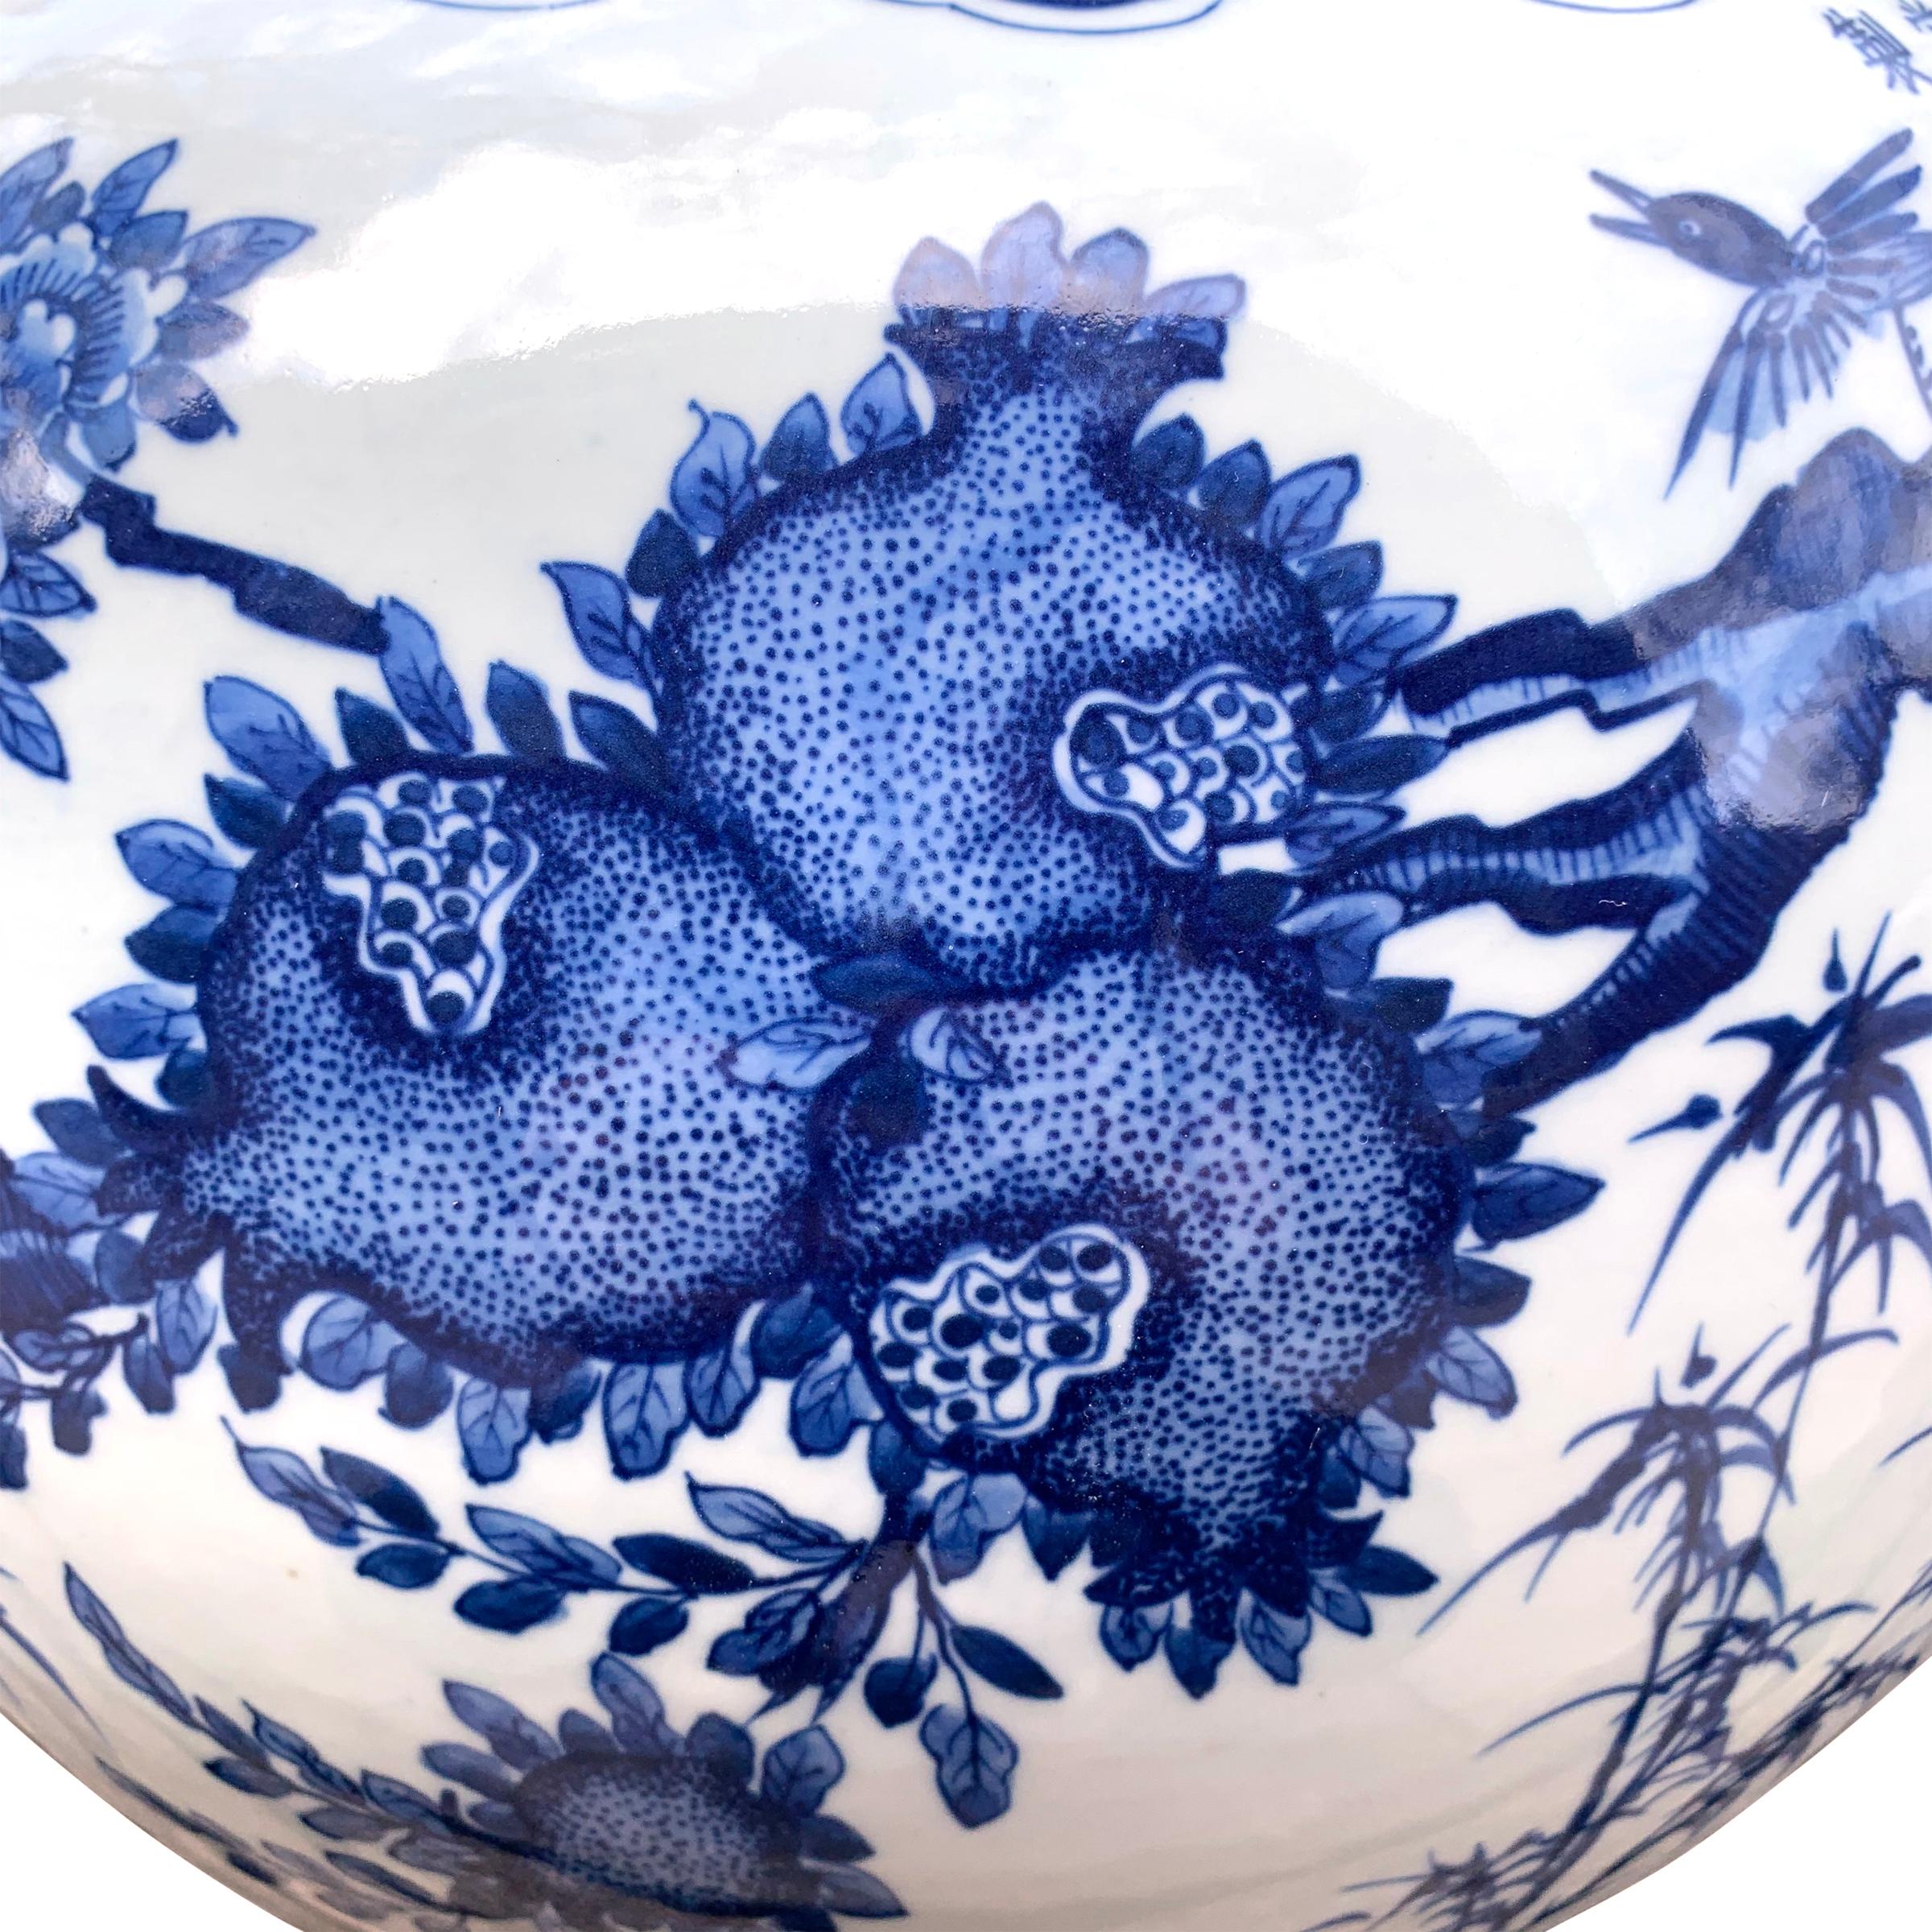 Glazed Chinese Blue and White Porcelain Vase